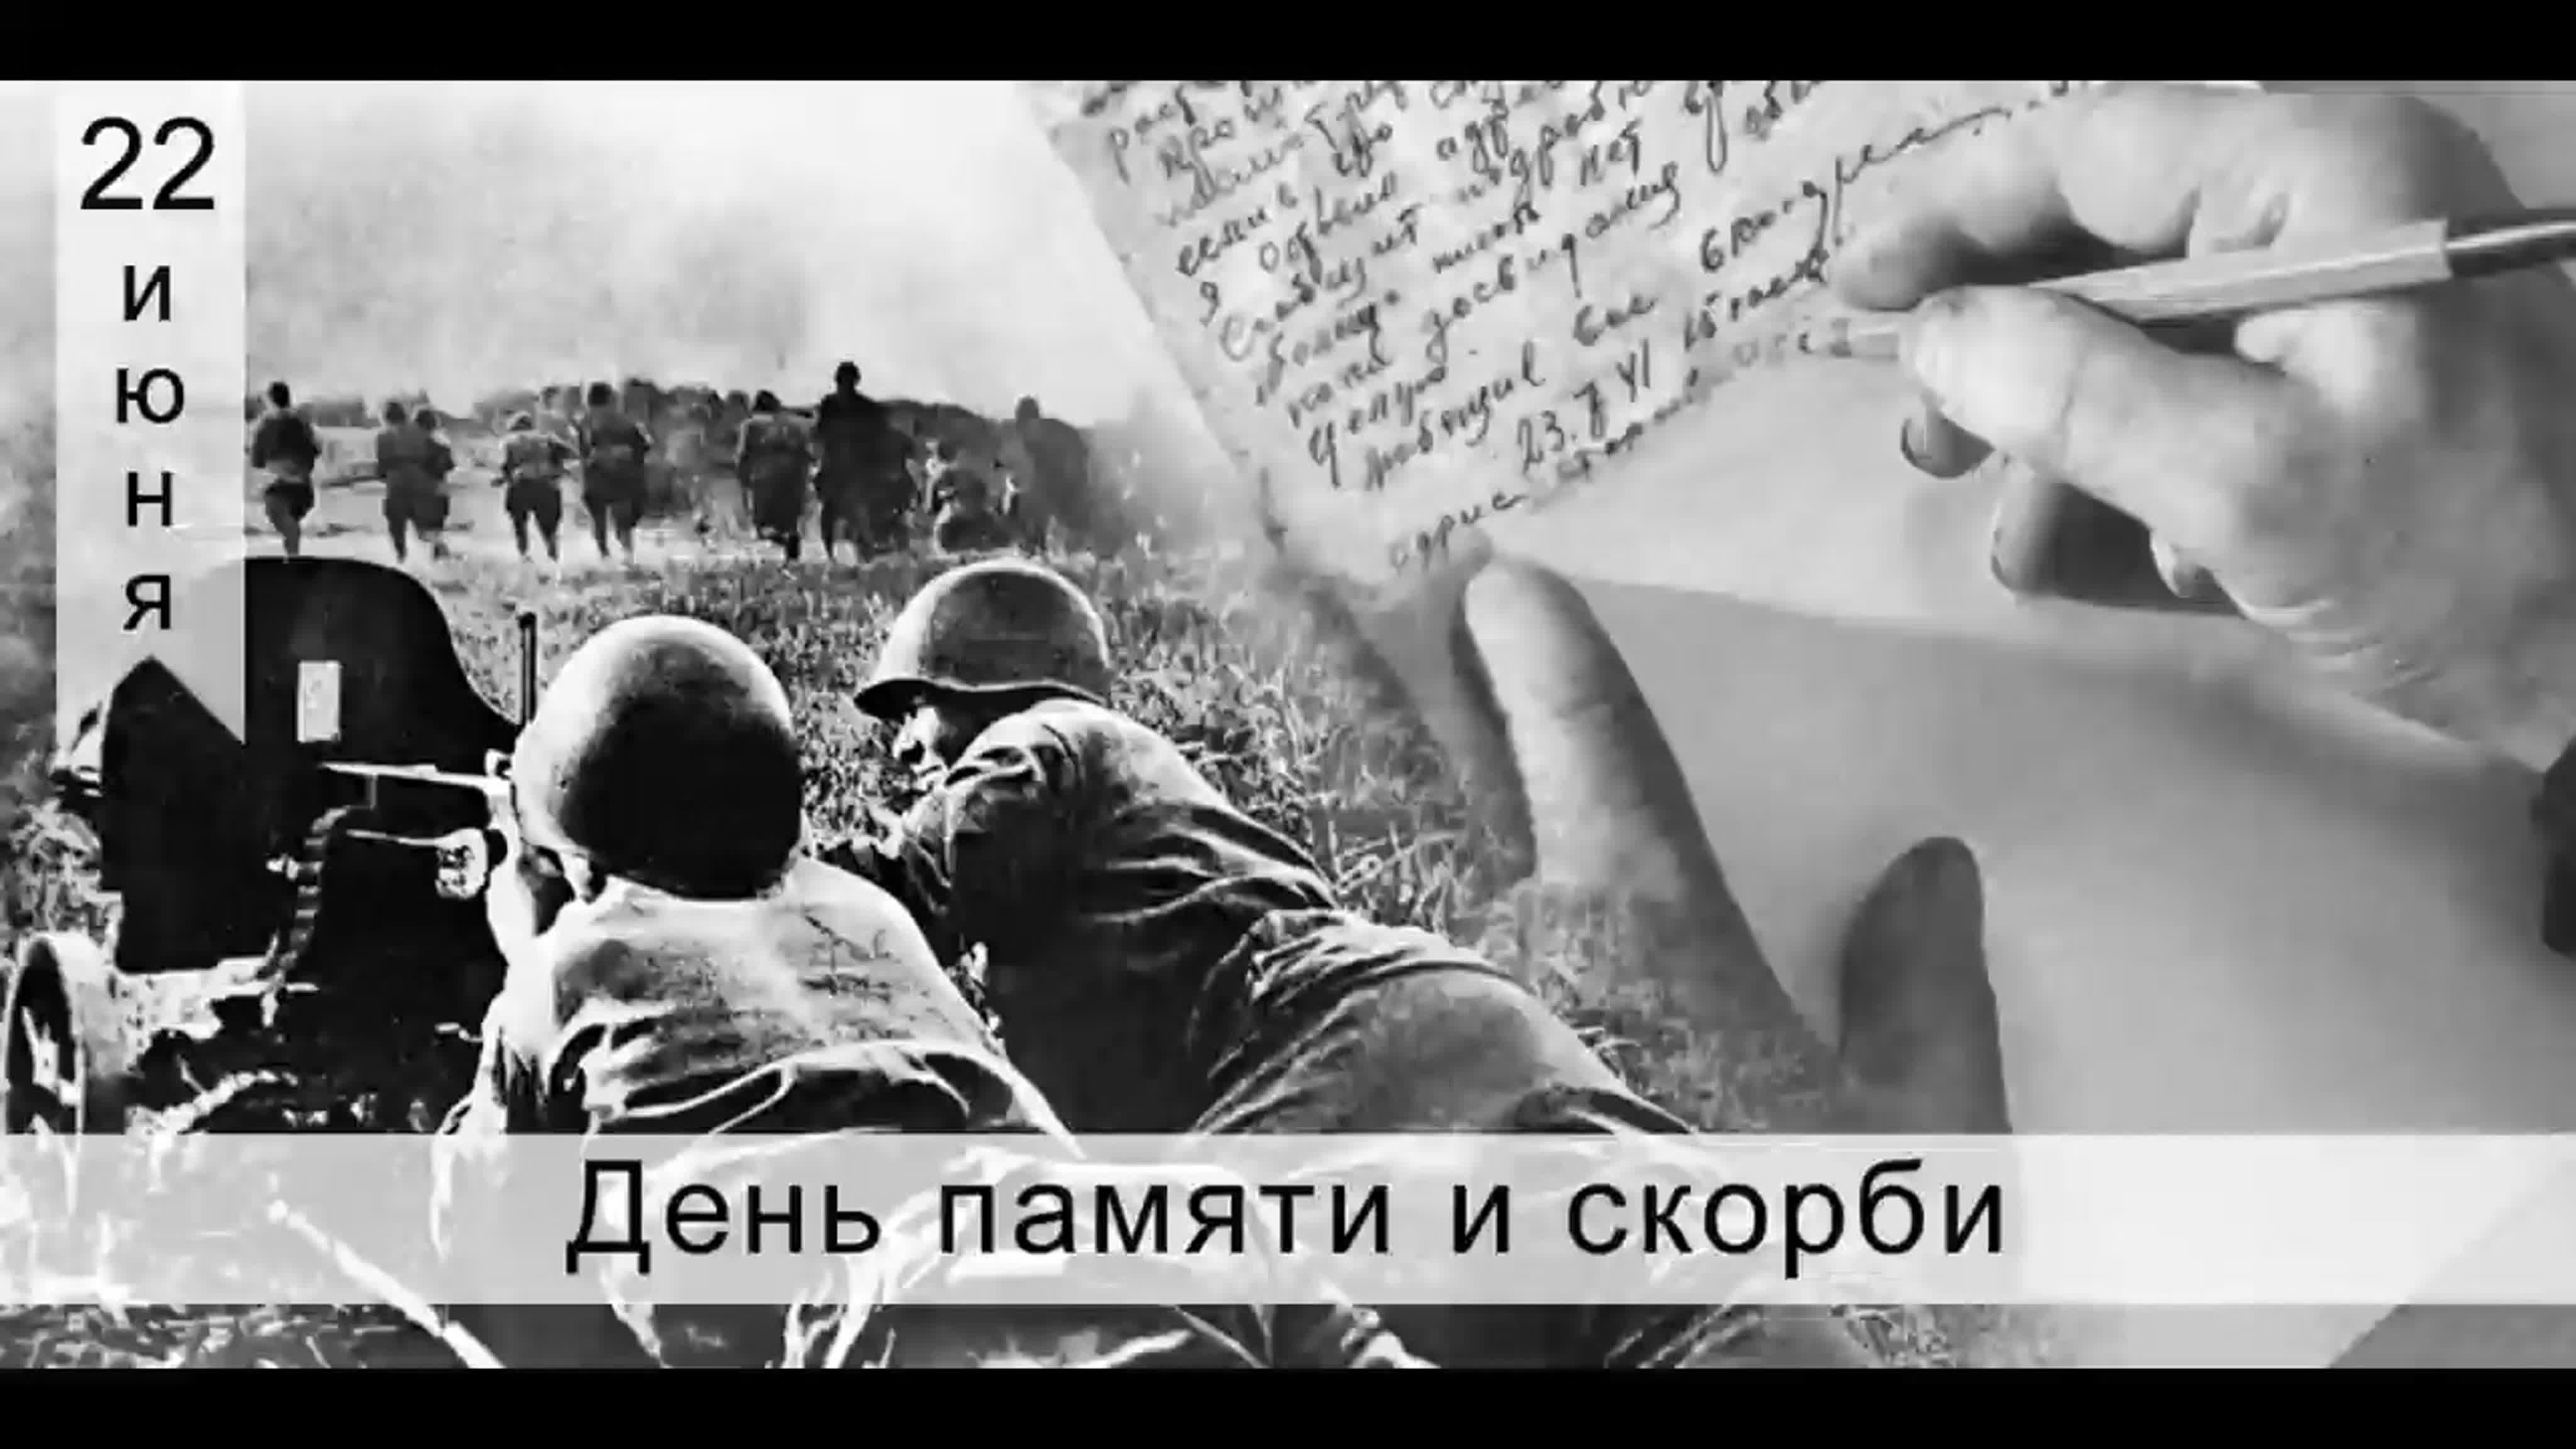 22 июня 1941 г событие. 22.06.1941 Начало ВОВ. 22 Июня день памяти и скорби день начала Великой Отечественной войны.